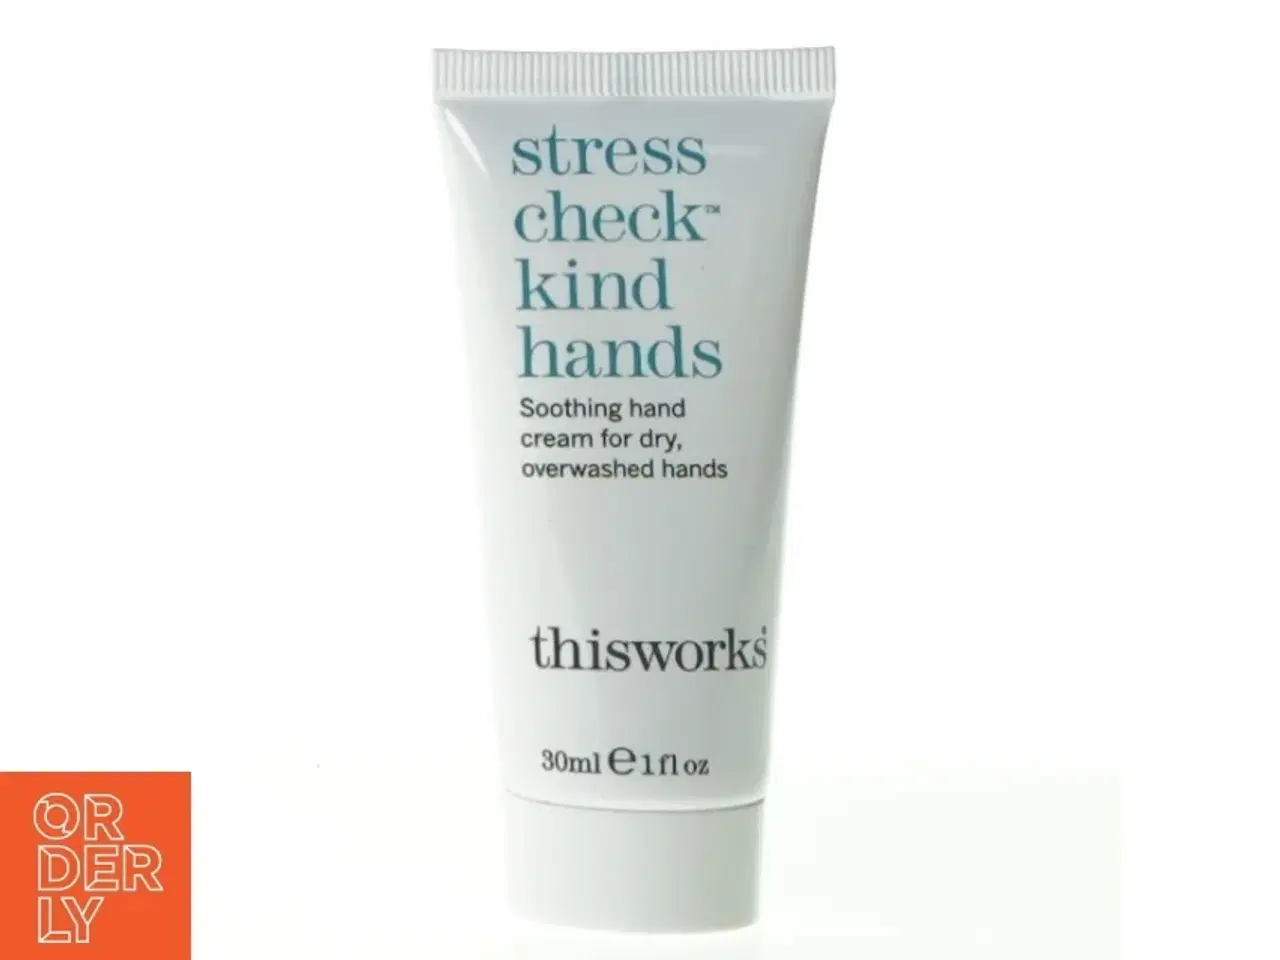 Billede 1 - Stress check kind hands creme fra Thisworks (str. 10 x 3 cm)